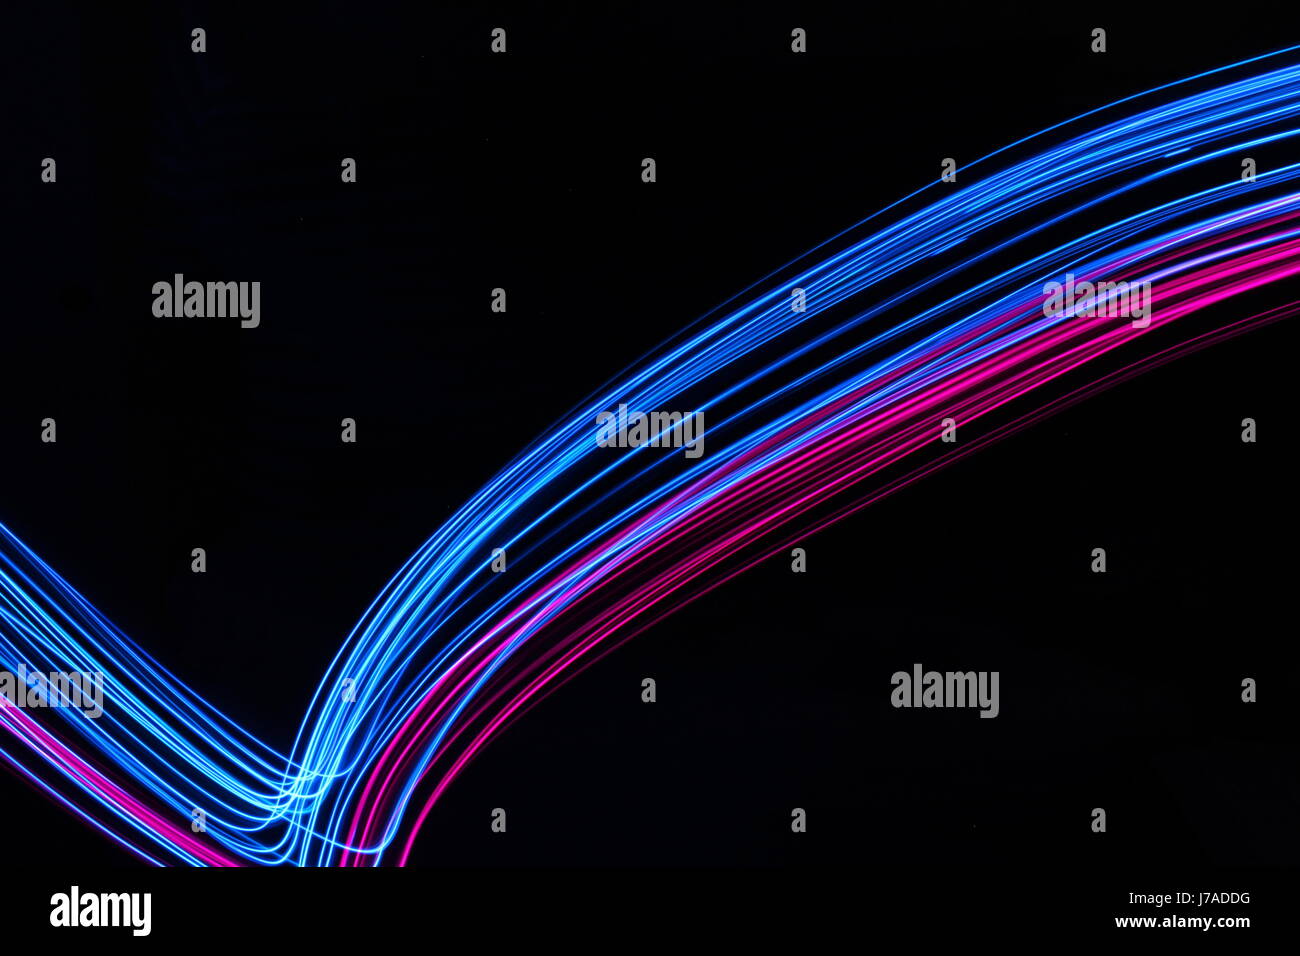 Una lunga esposizione fotografia di neon pink e il colore blu in una configurazione astratta contro uno sfondo nero. Luce fotografia pittura, di colore in astratto Foto Stock